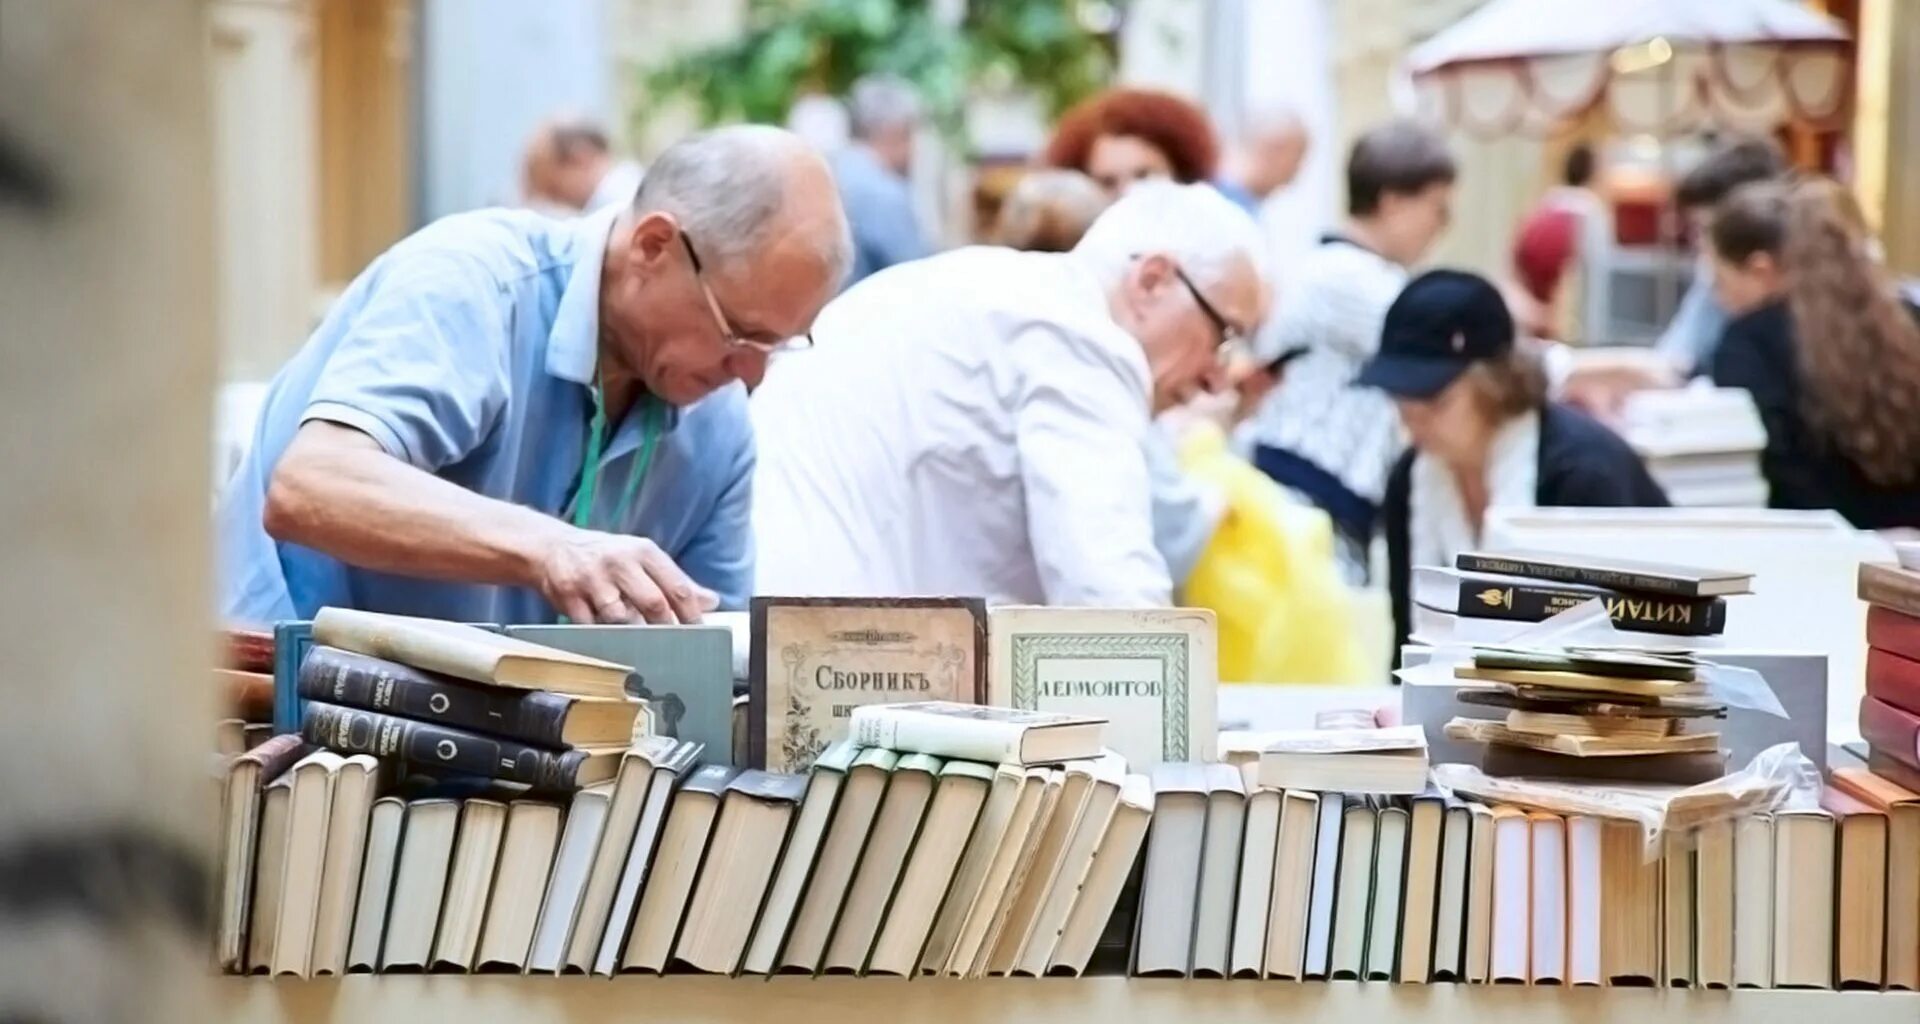 Покупка книг видео. Книжная торговля. Реализация книг. Дедушка на улице продет книги. Люди продающие книги.